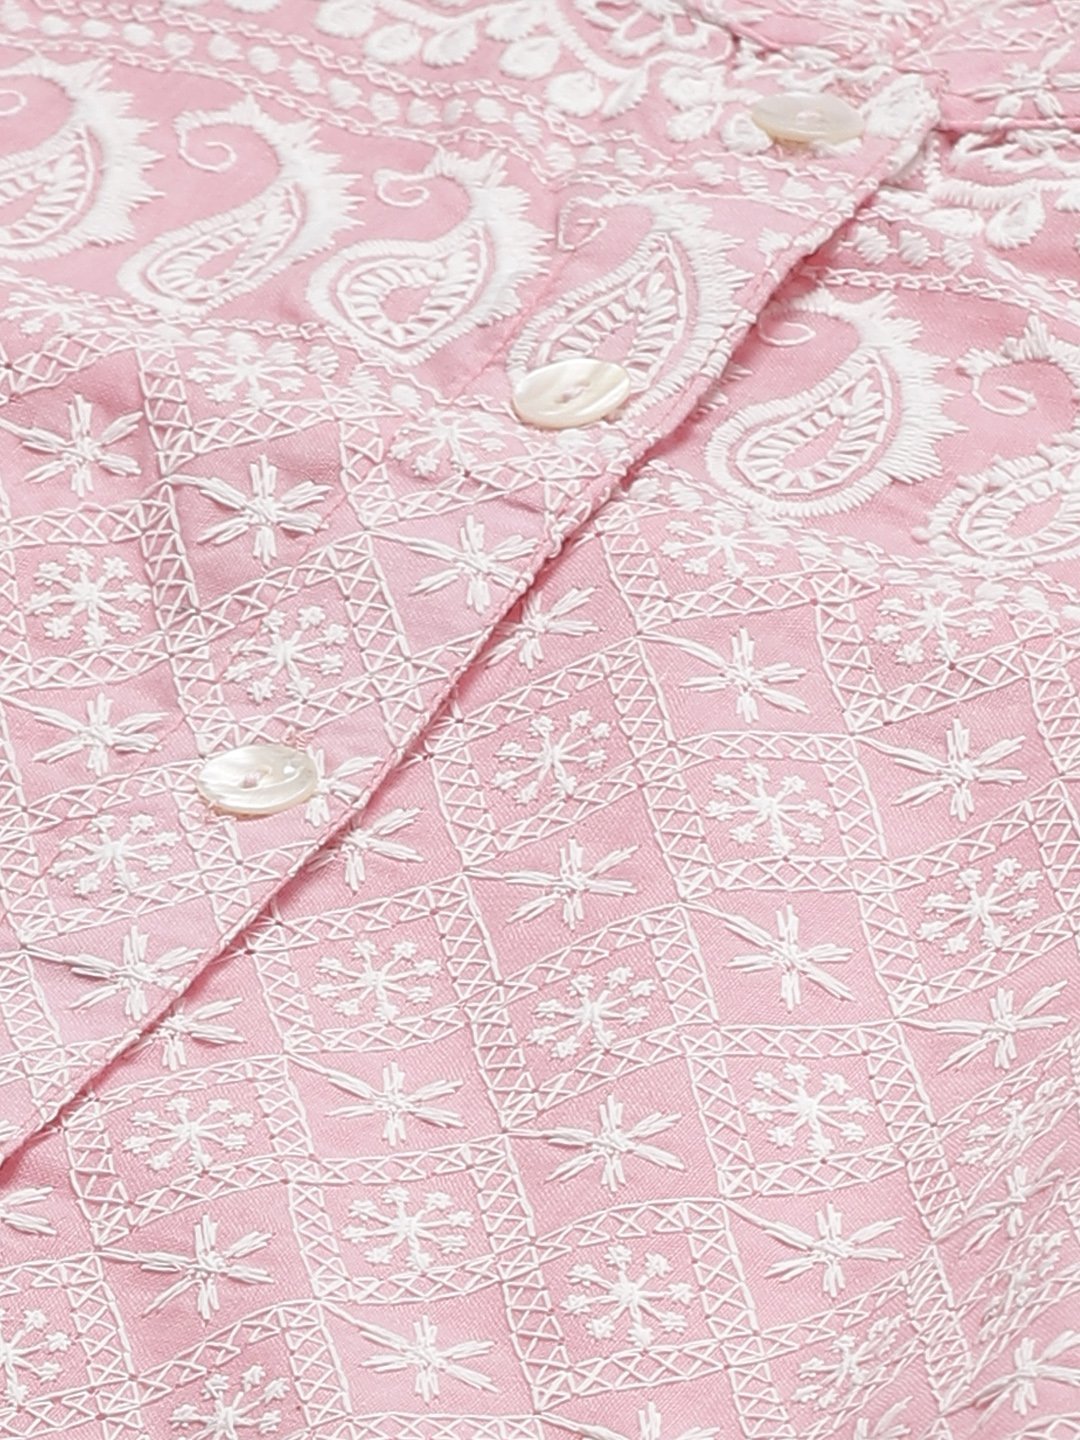 Women's Pink & White Chikankari Embroidered Kurta with Palazzos - Jompers